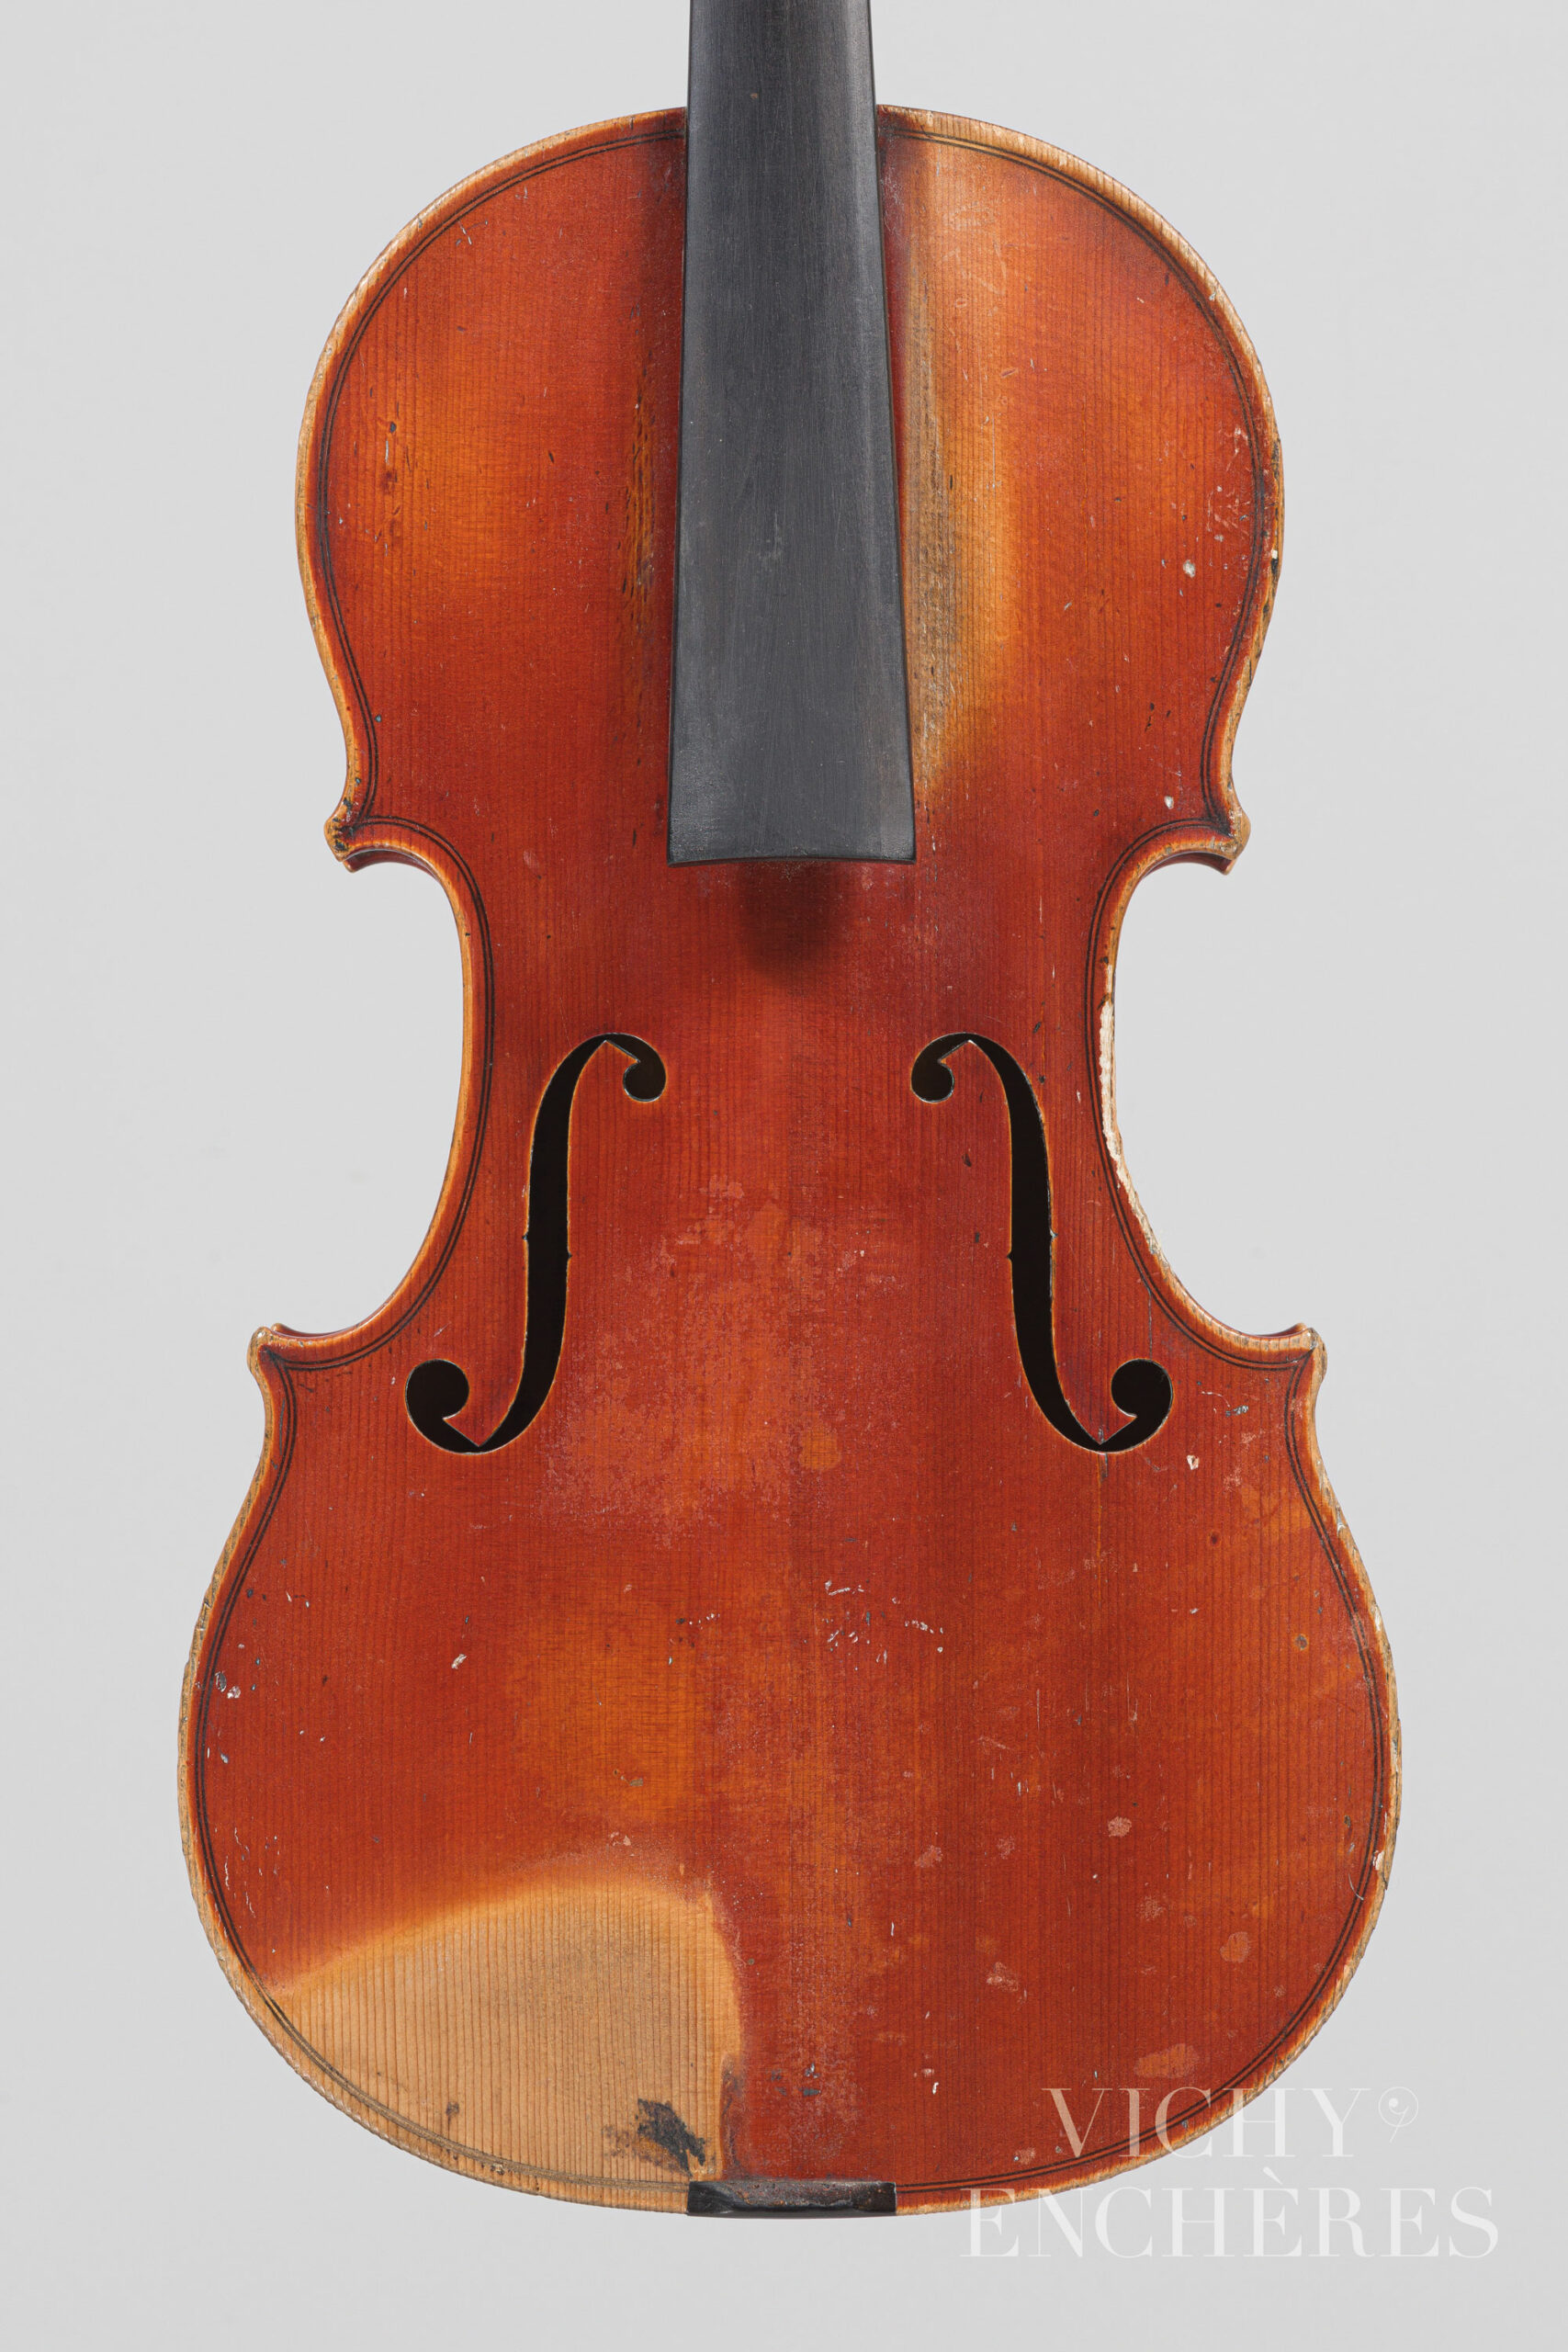 Violon de GAND Frères Instrument mis en vente par Vichy Enchères le 1er décembre 2022 © Christophe Darbelet